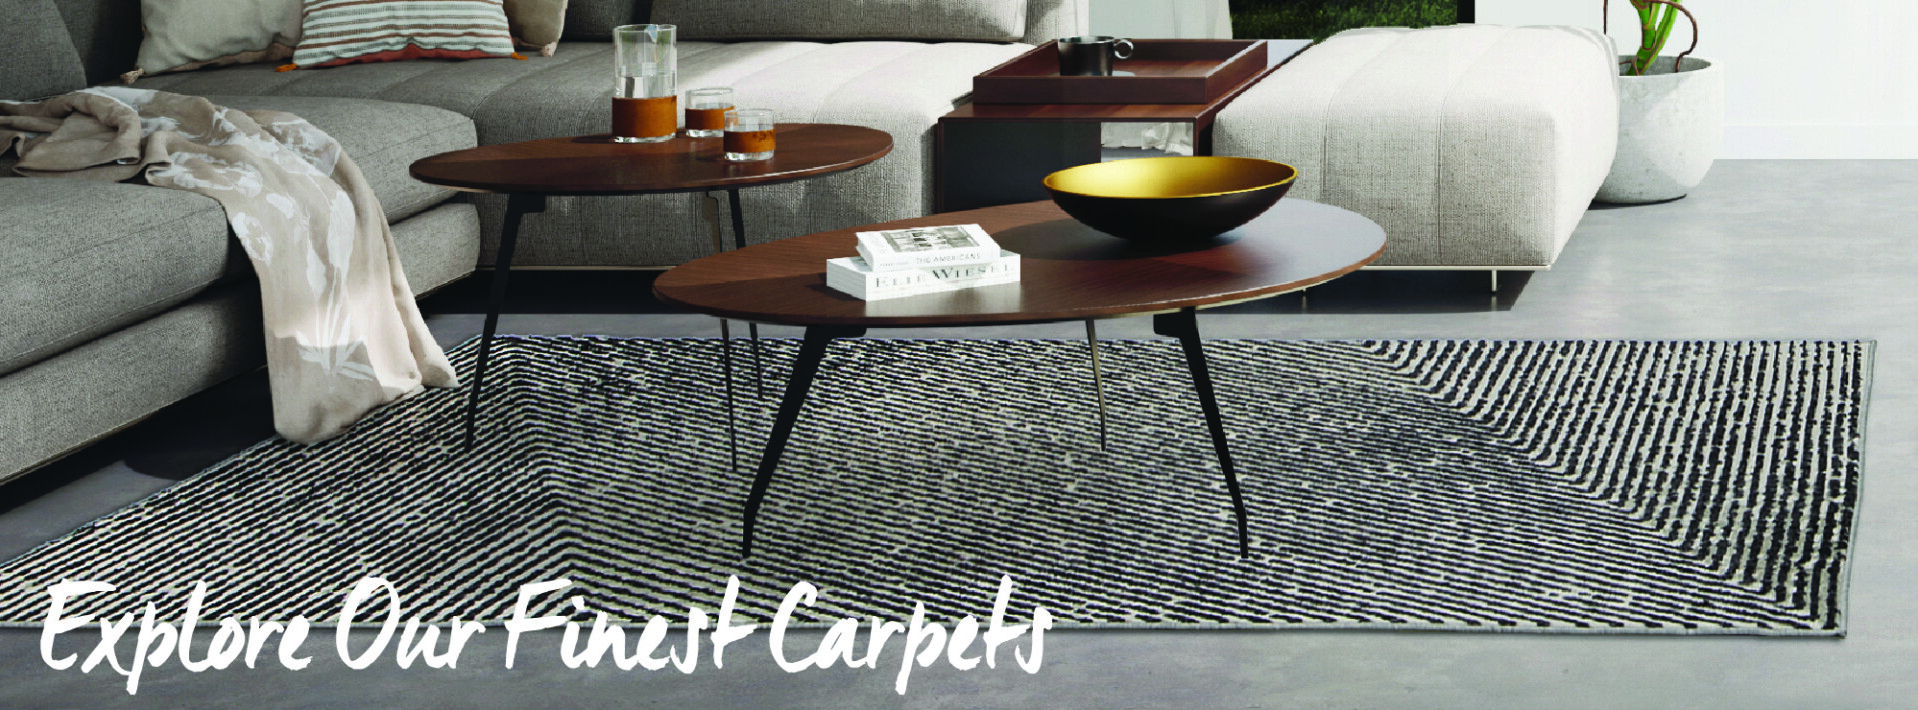 Explore our finest carpets